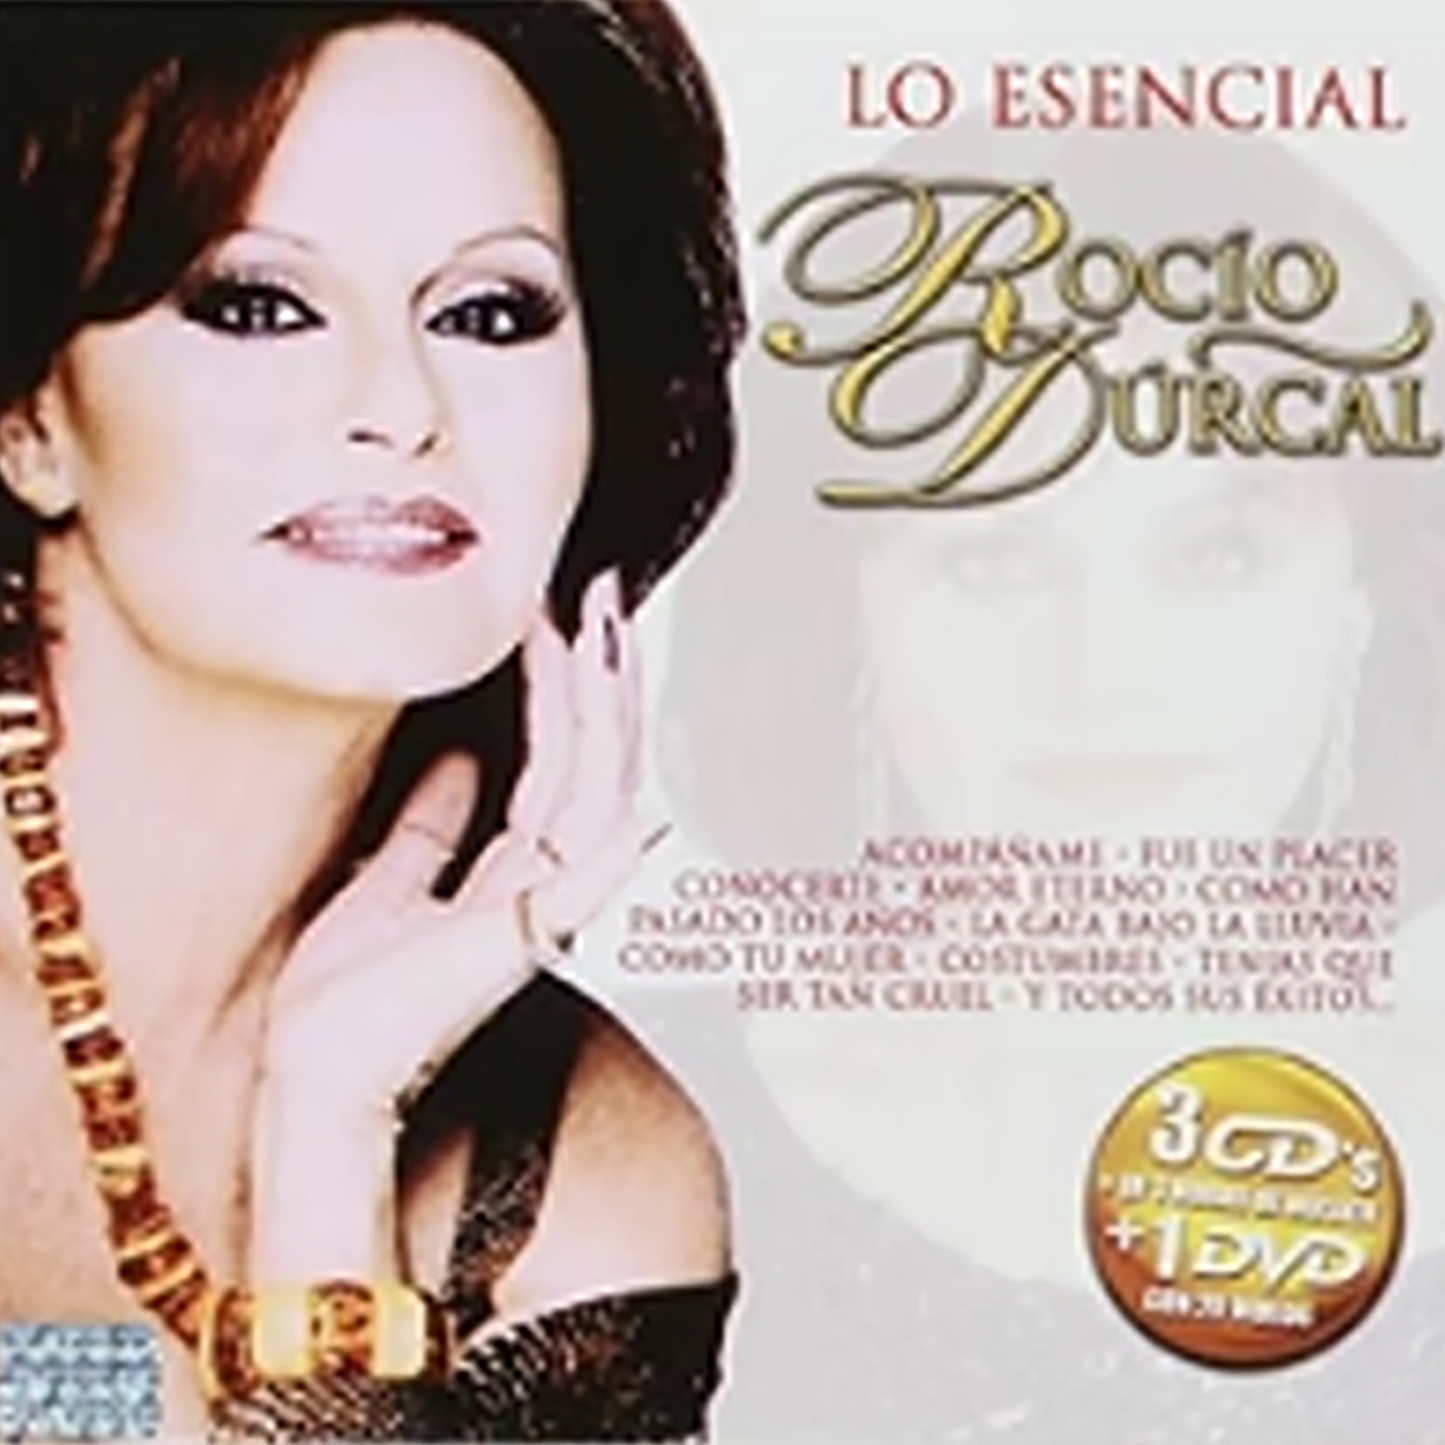 Rocio Durcal - Lo Esencial (3CD+DVD) (CD)